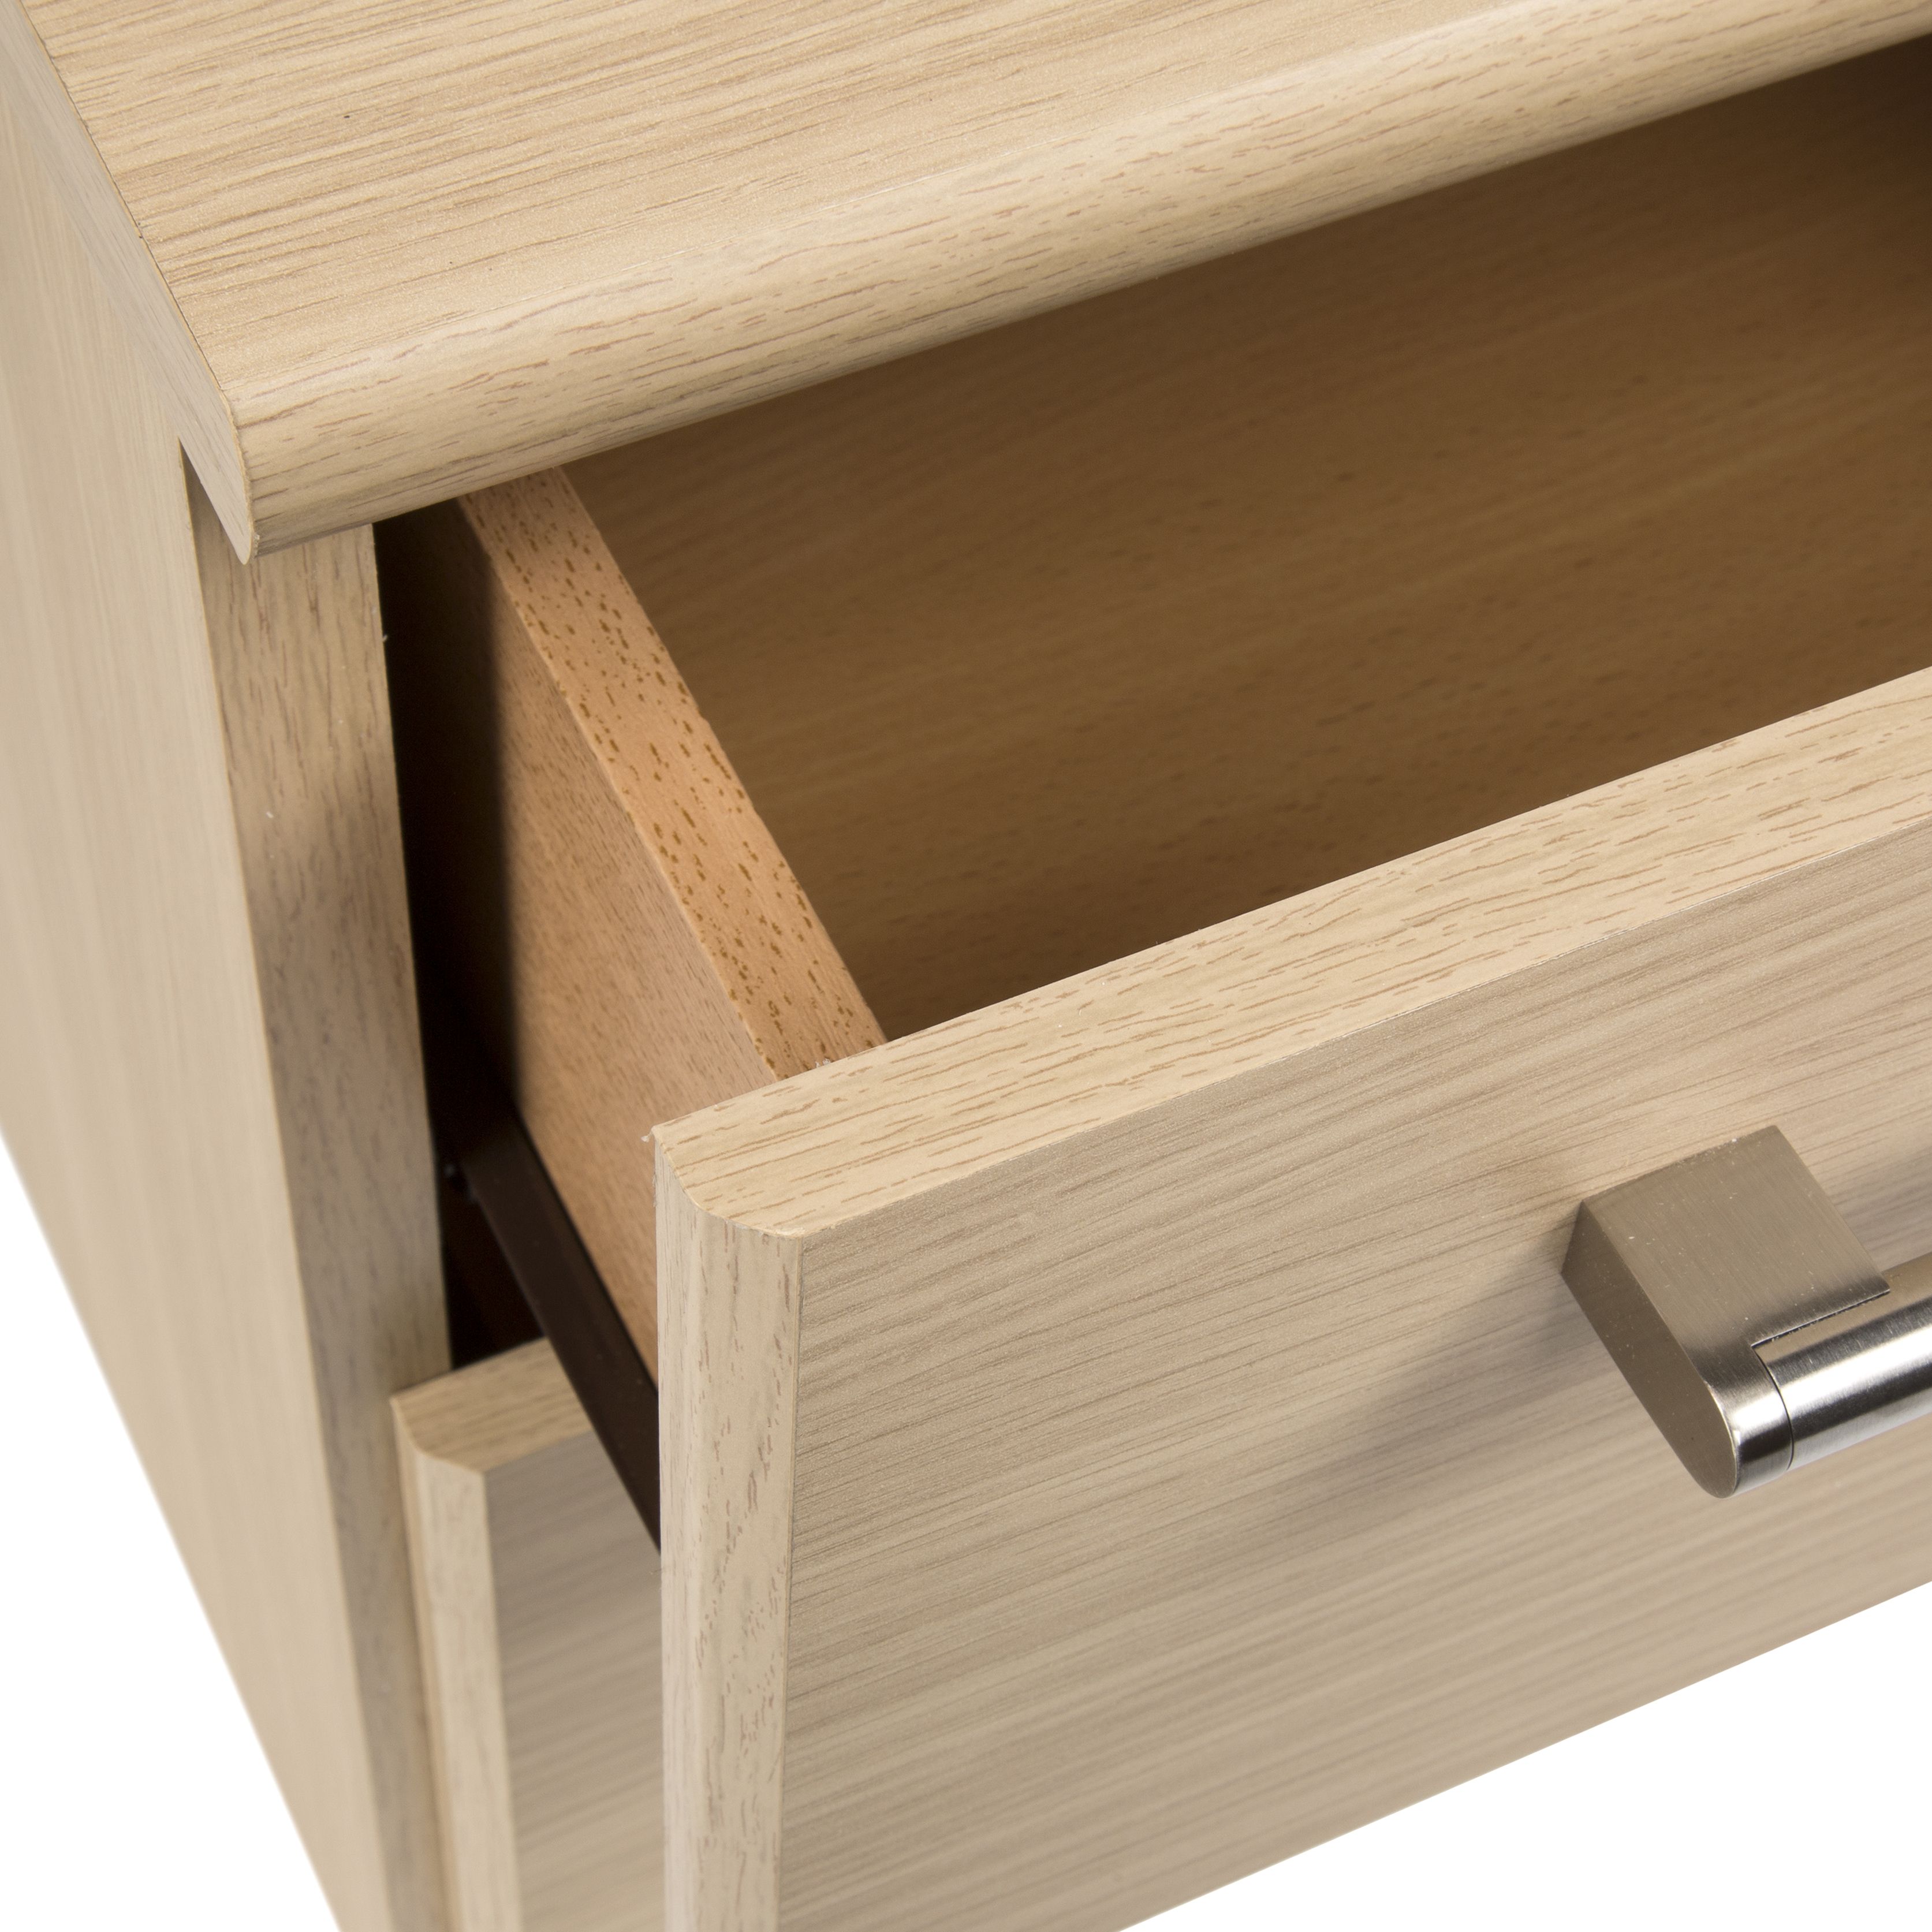 Elsey Matt oak effect 2 Drawer Bedside chest (H)444mm (W)386mm (D)375mm